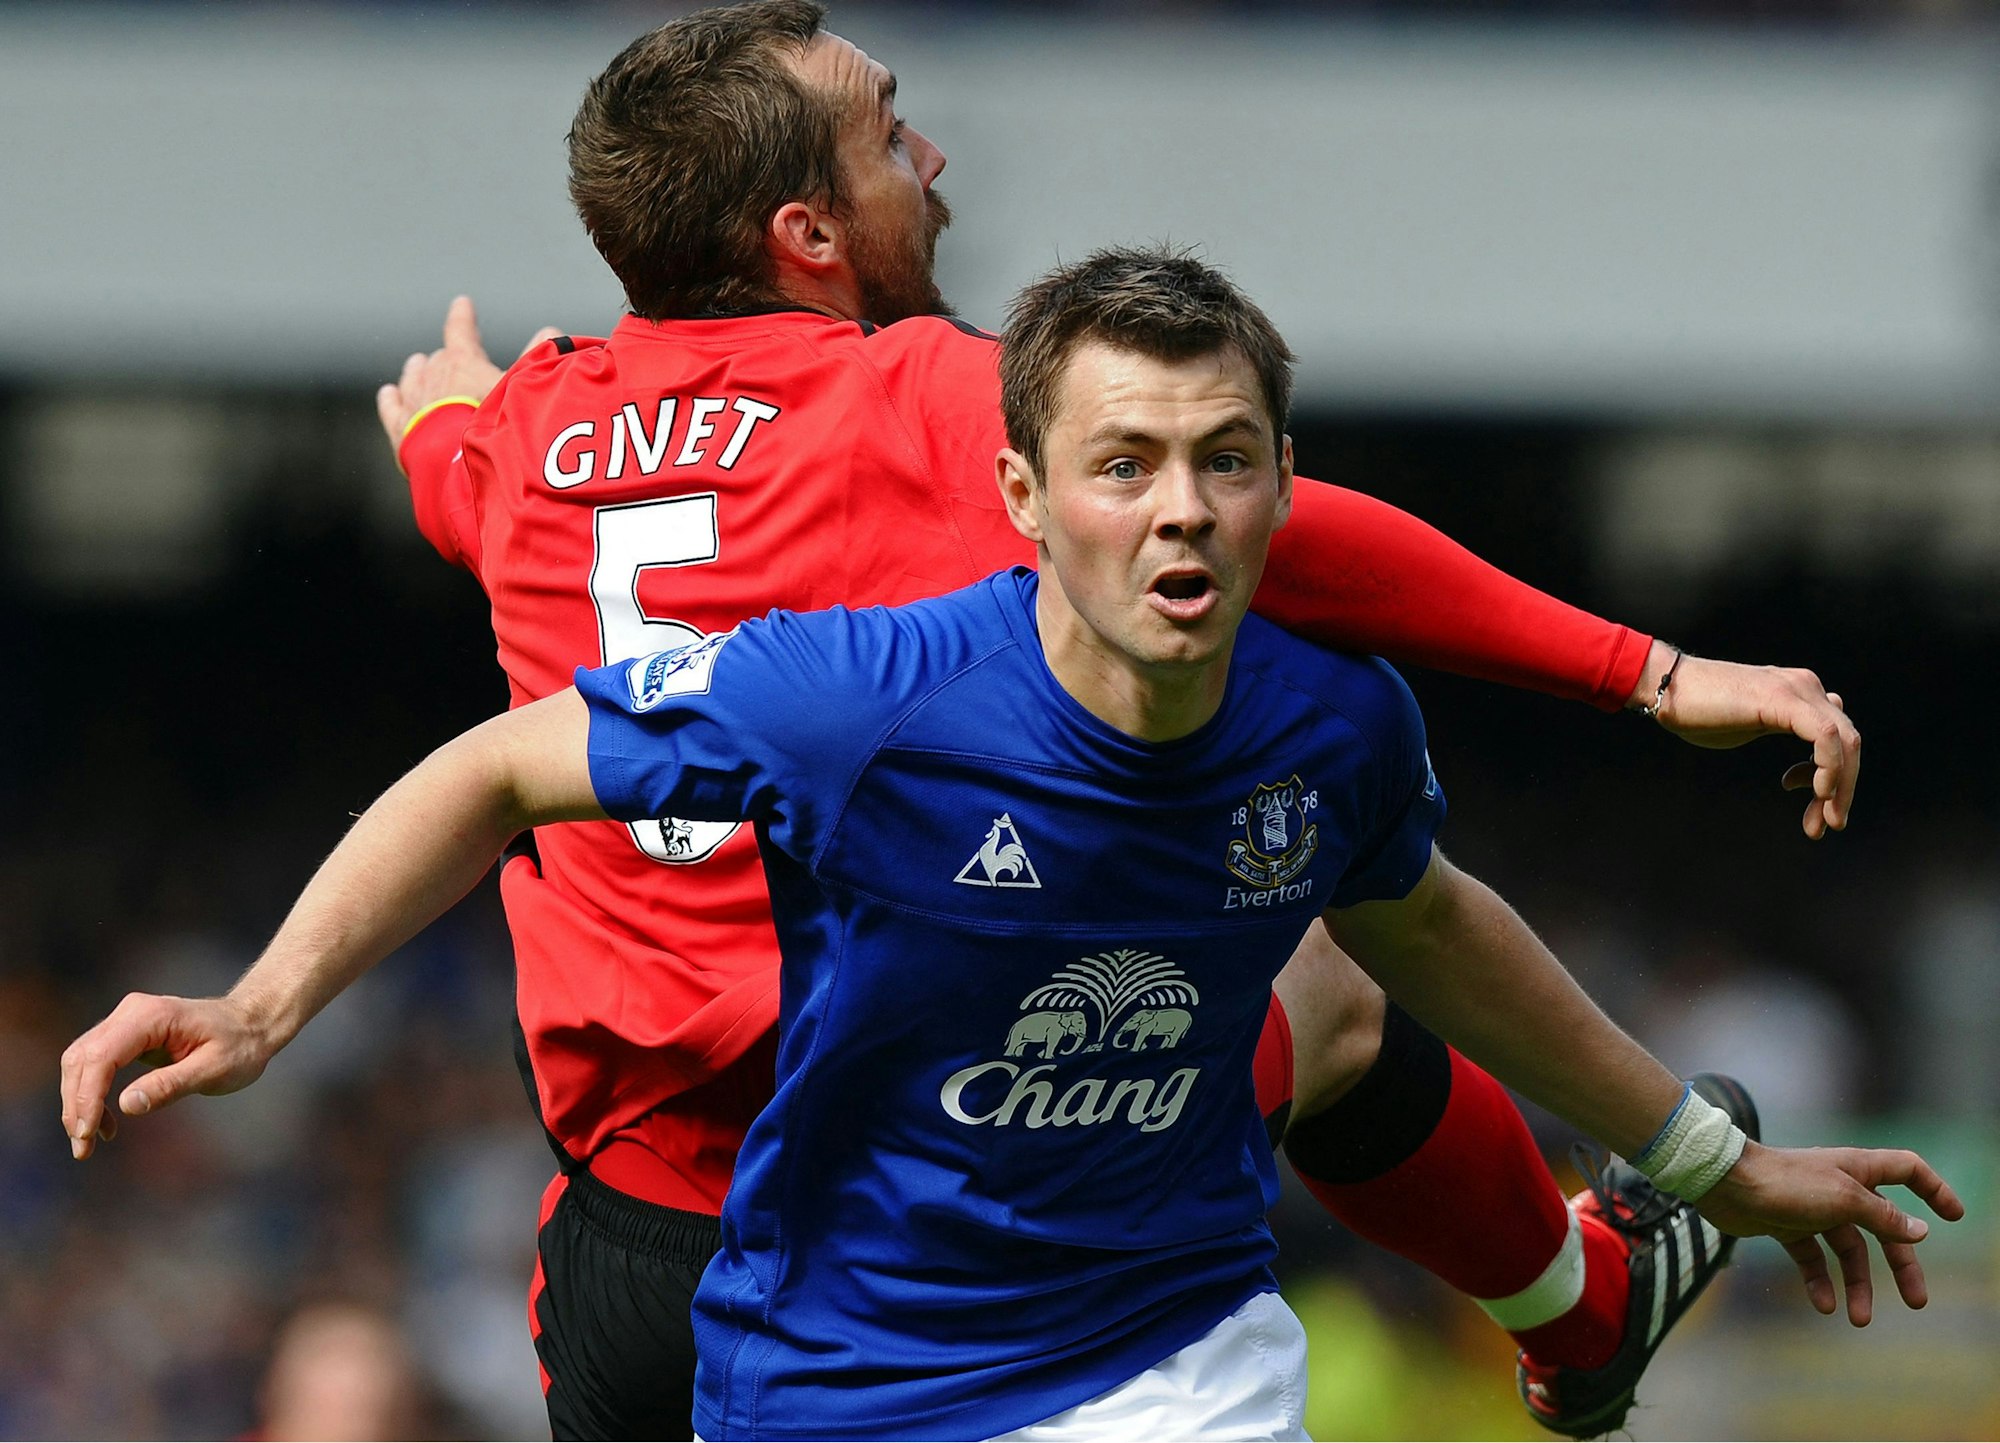 Dinijar Biljaletdinow beim Spiel des FC Everton gegen die Blackburn Rovers im Kampf um den Ball